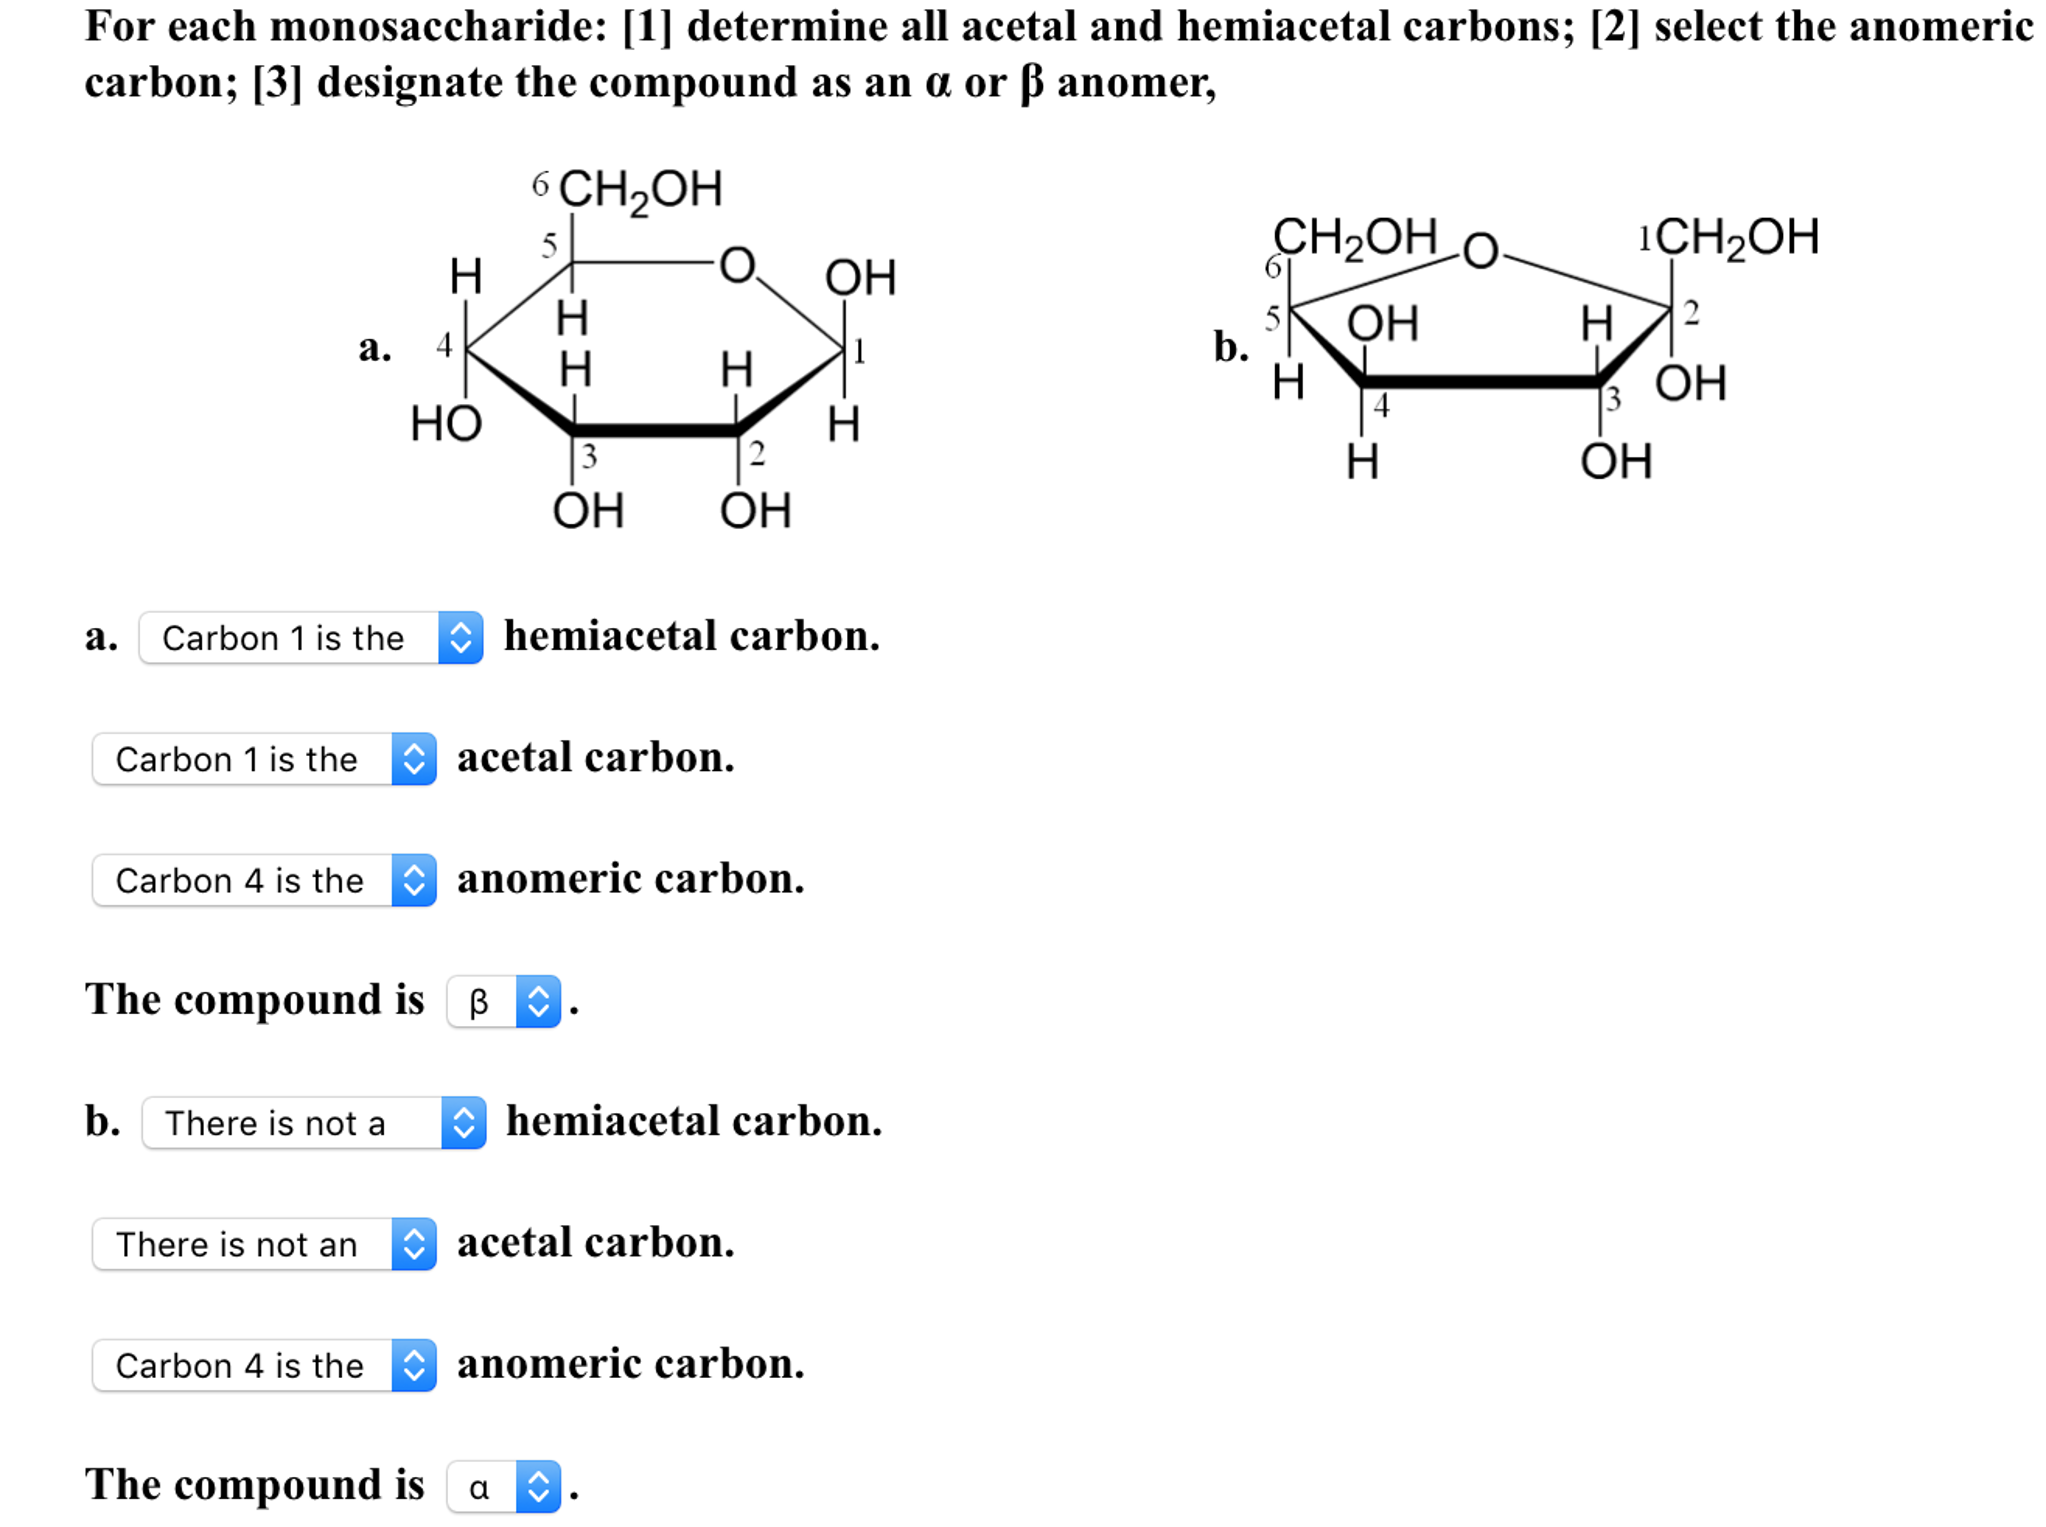 anomeric carbon